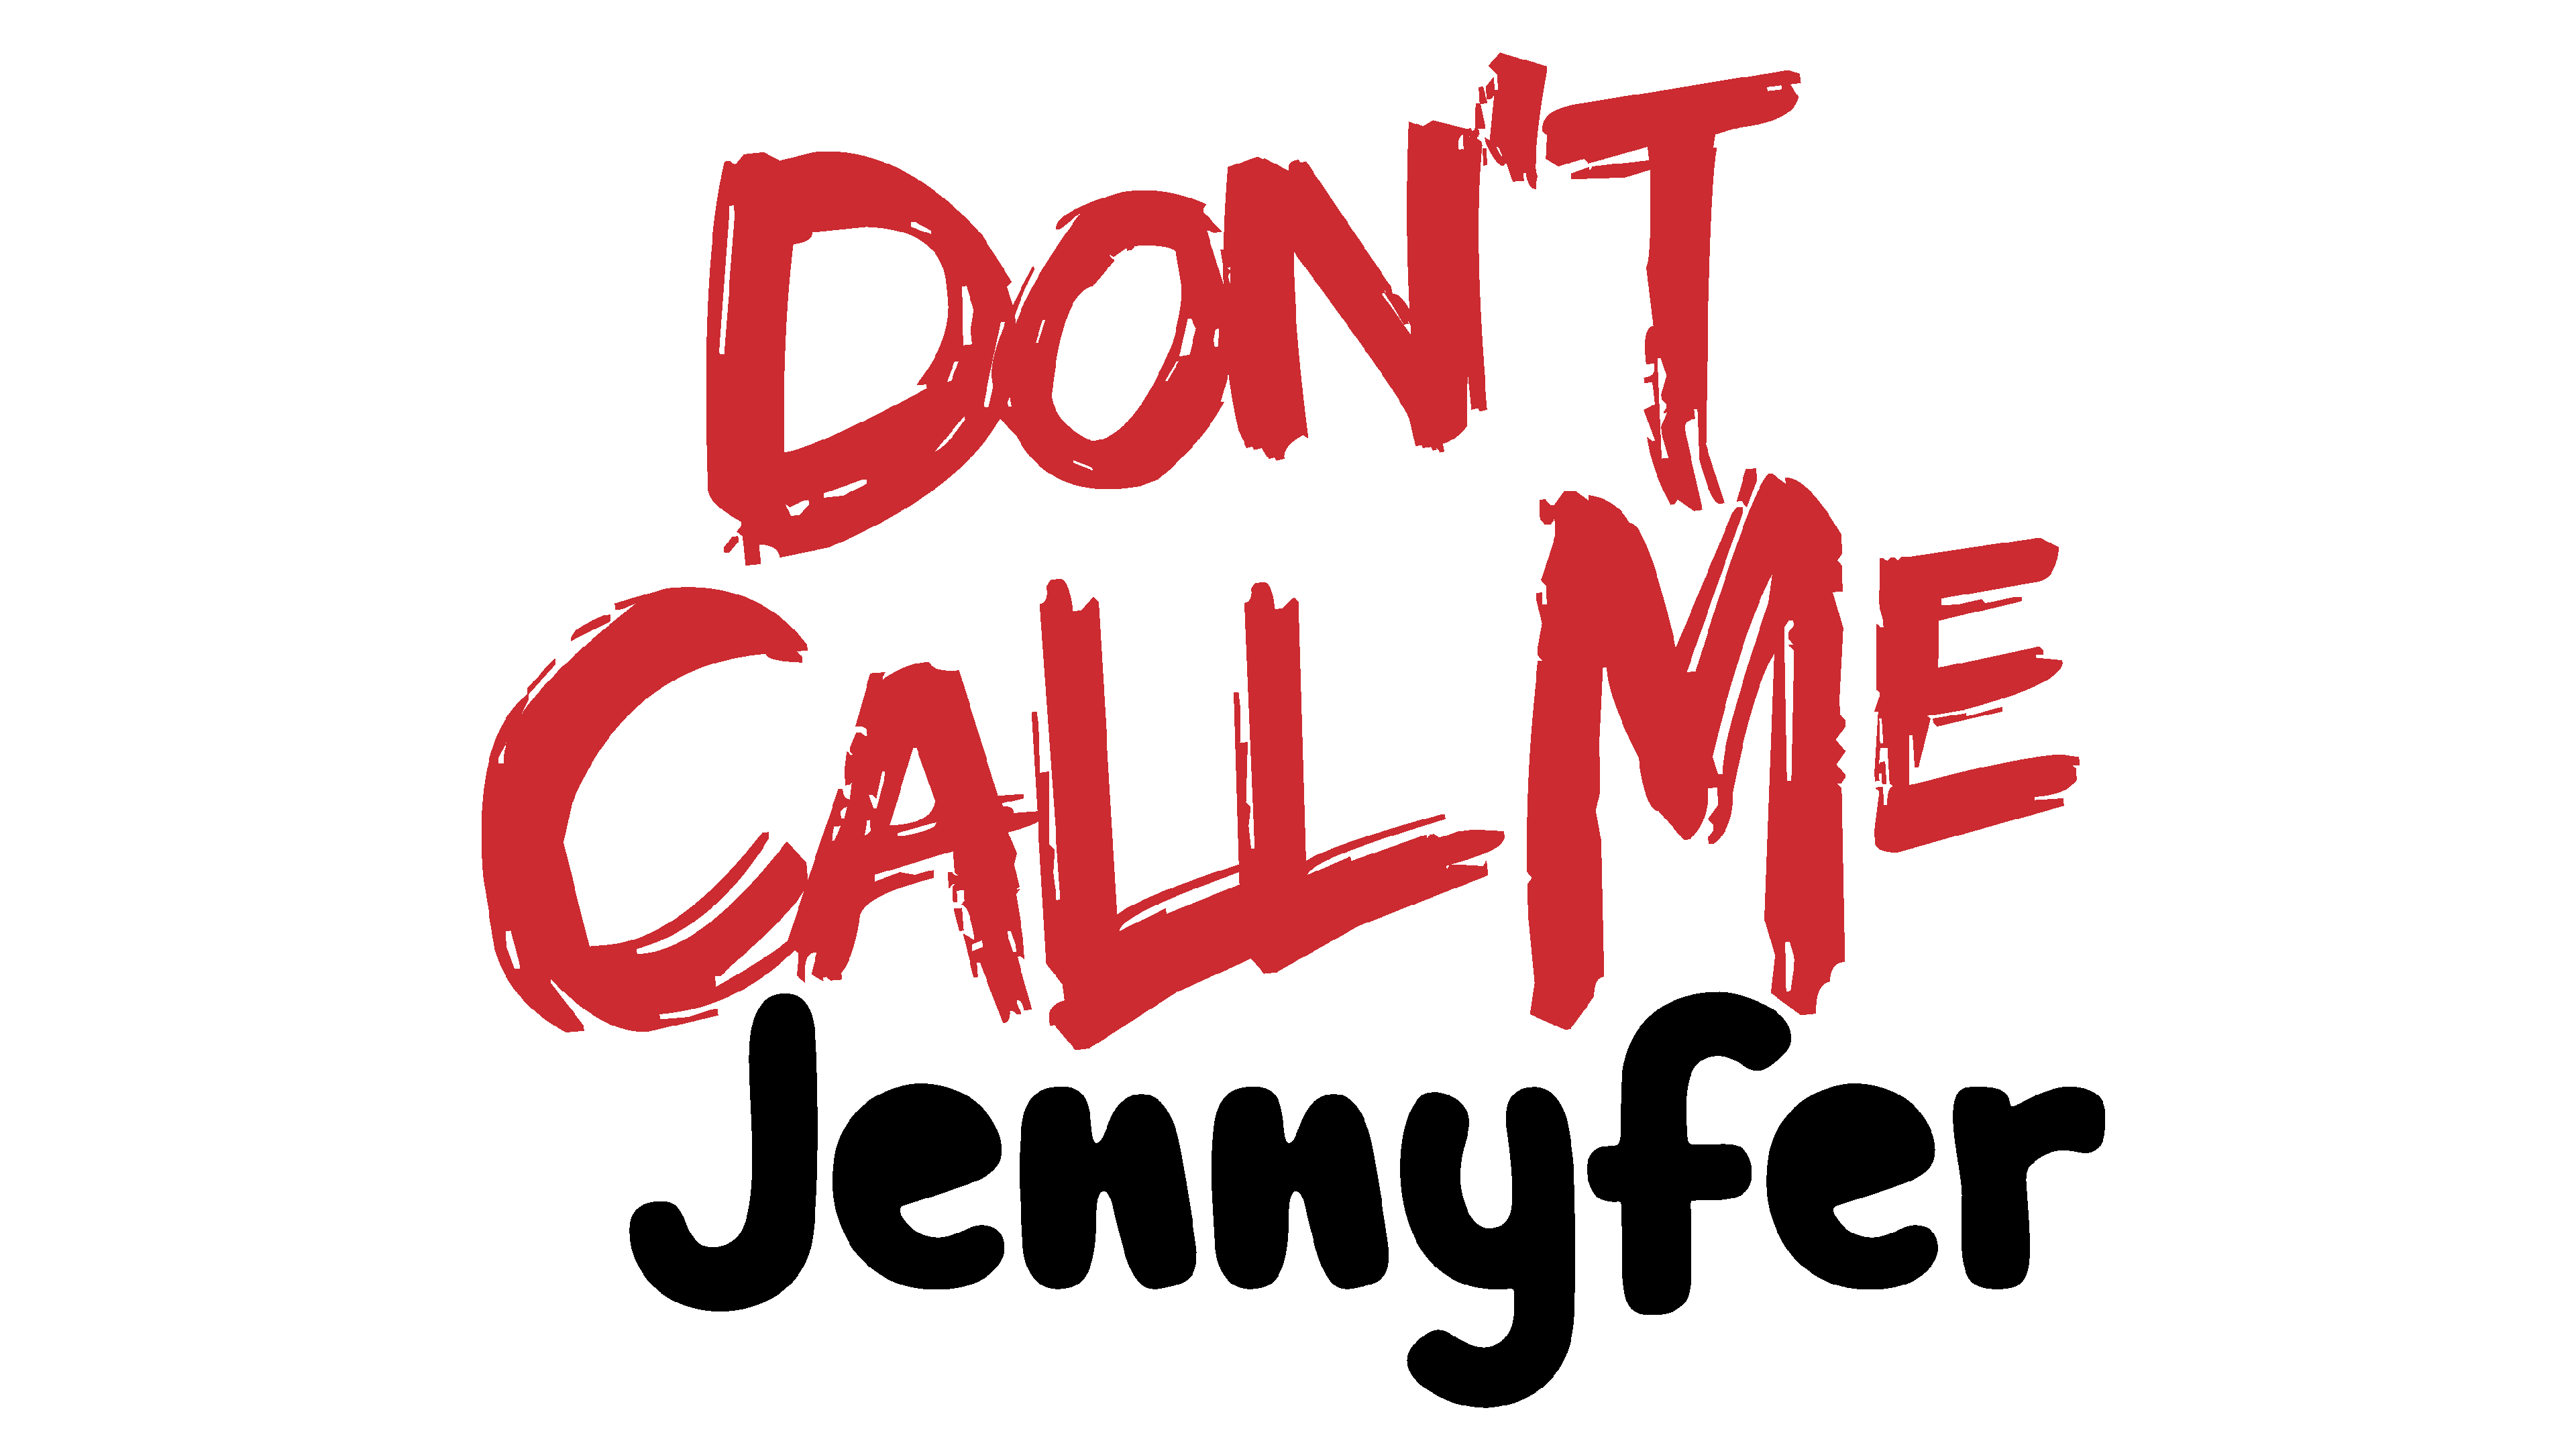 Dont Call me Jennyfer. Dont Call me Jennyfer бренд. Dont Call me Jennifer одежда. Don't Call me Jennifer платья. Dont que